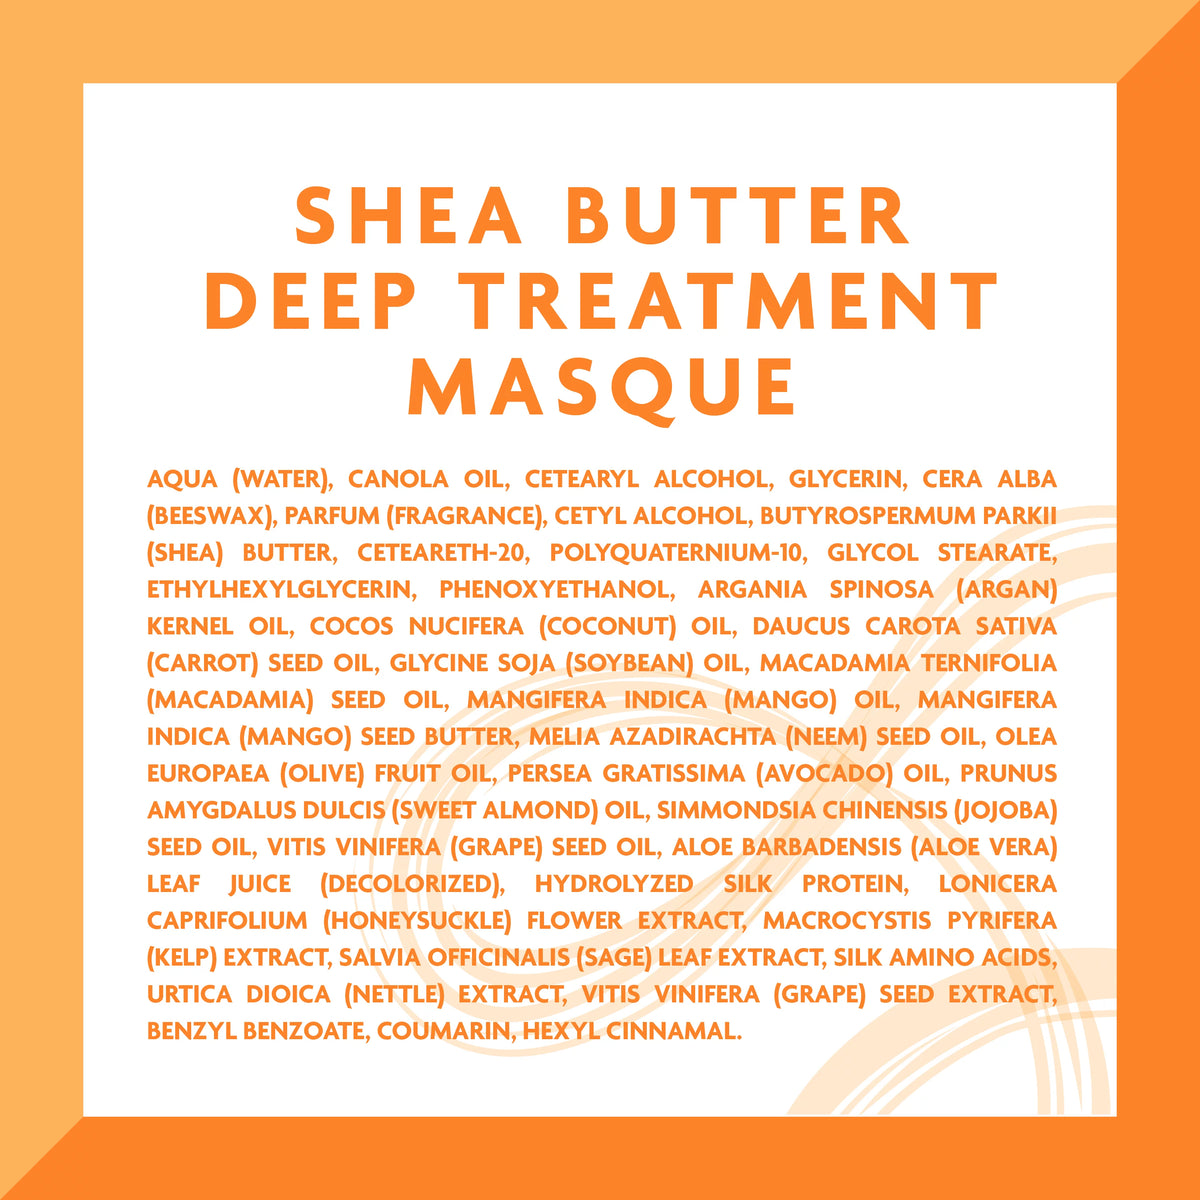 Cantu Shea Butter for Natural Hair Deep Treatment Hair Masque - 50g